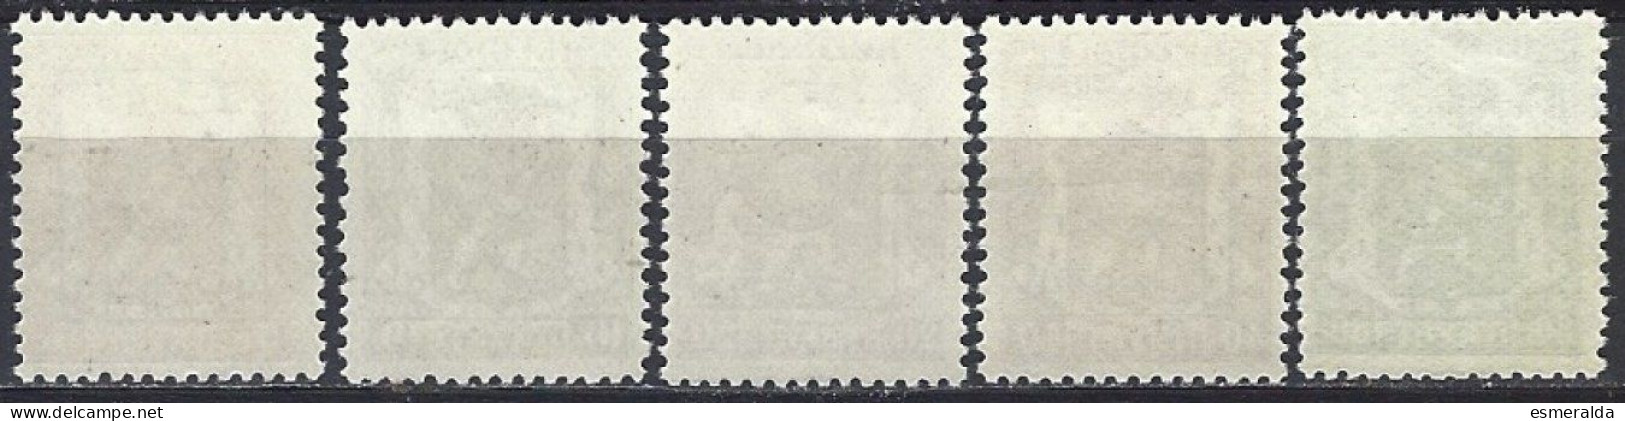 (BL47)   PRE 589/93 ,5 Valeurs  ** - Typografisch 1936-51 (Klein Staatswapen)